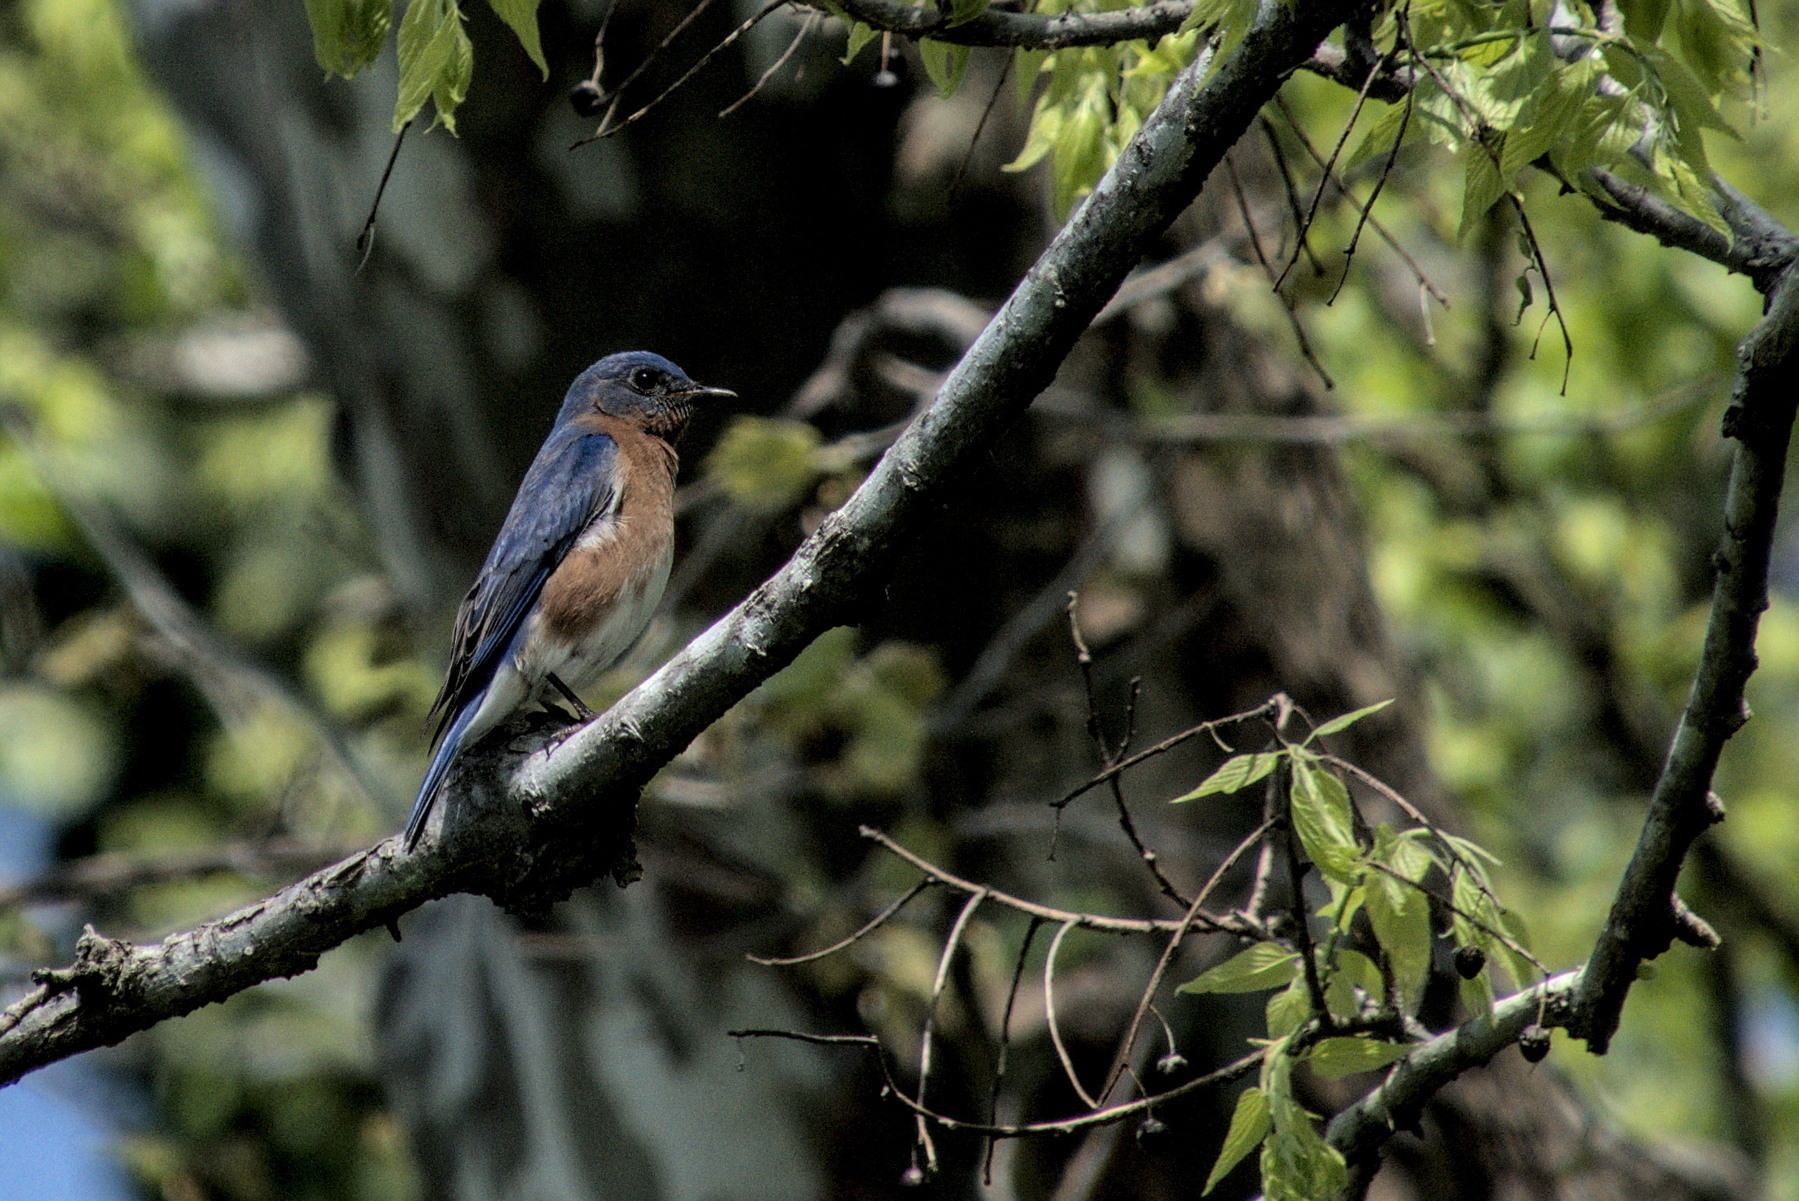 Eastern Bluebird in tree.